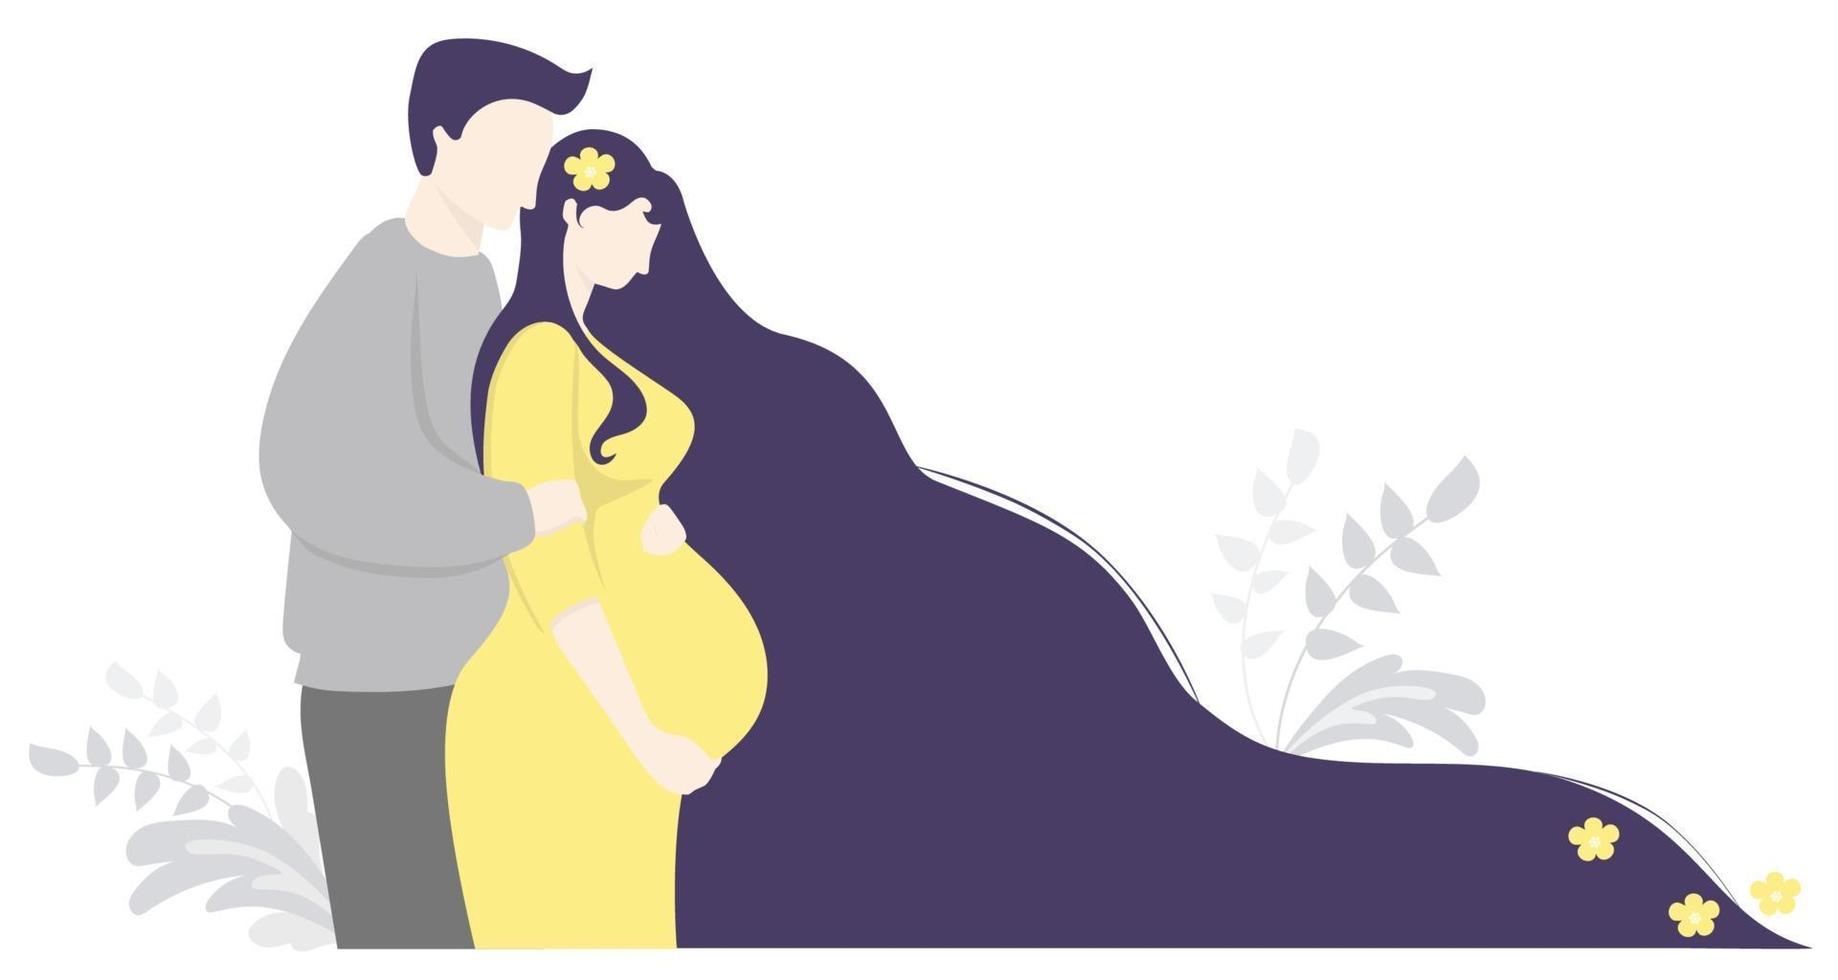 maternité et famille. femme enceinte heureuse avec des fleurs dans les cheveux longs dans une robe jaune embrasse le ventre. un homme se tient à côté d'elle et la serre doucement dans ses bras. illustration vectorielle. jolie bannière horizontale décorative vecteur